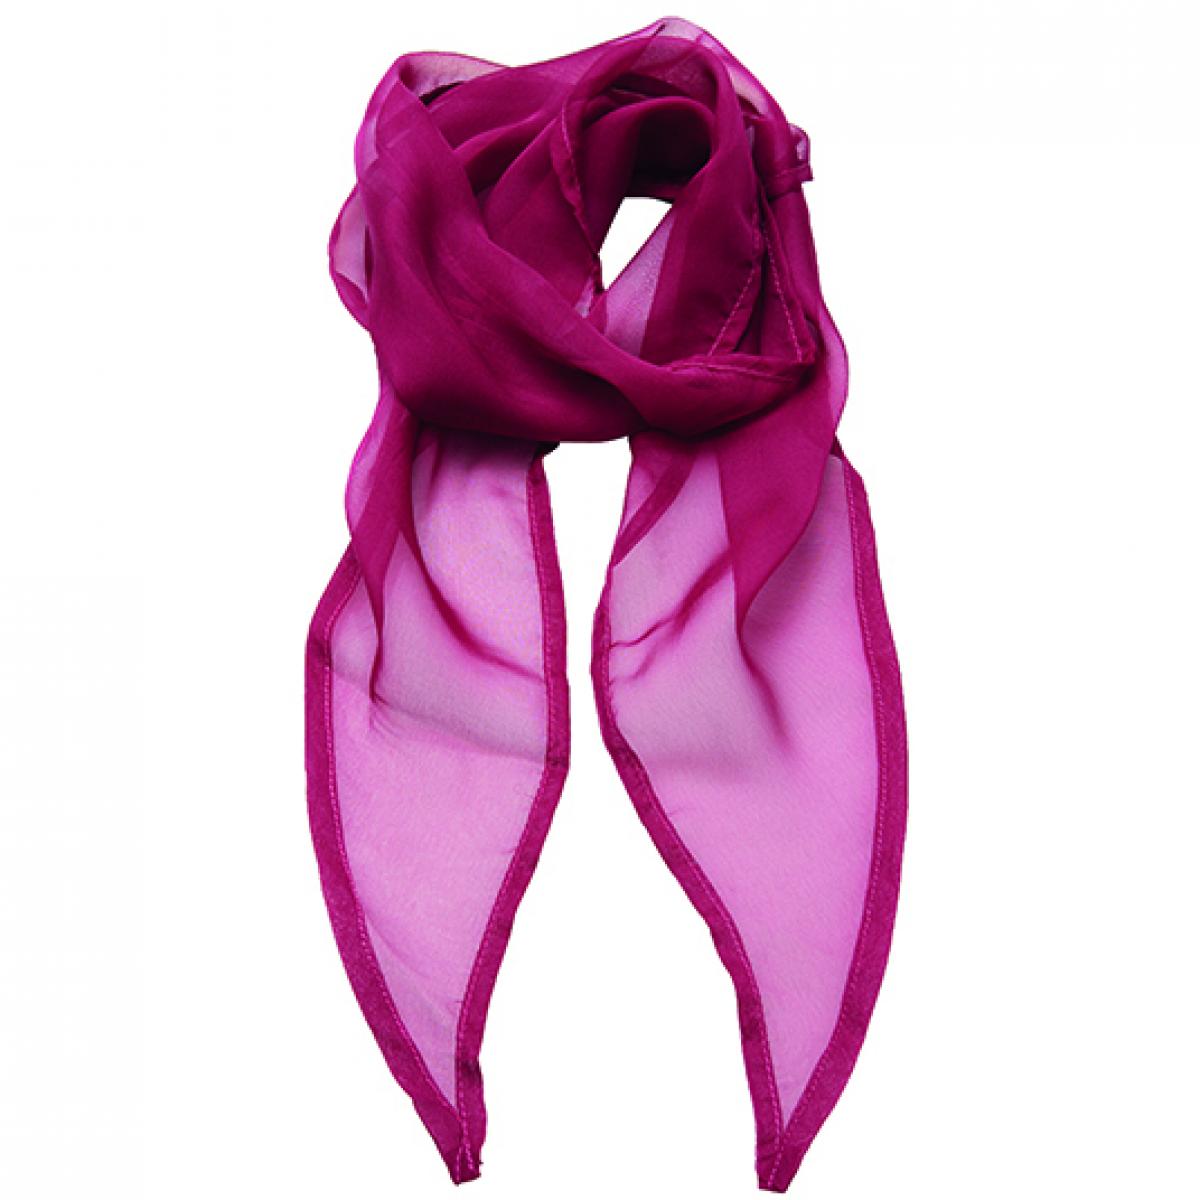 Hersteller: Premier Workwear Herstellernummer: PR740 Artikelbezeichnung: Schal Women`s Colour Chiffon Scarf - 98 x 16,5 cm Farbe: Hot Pink (ca. Pantone 214c)